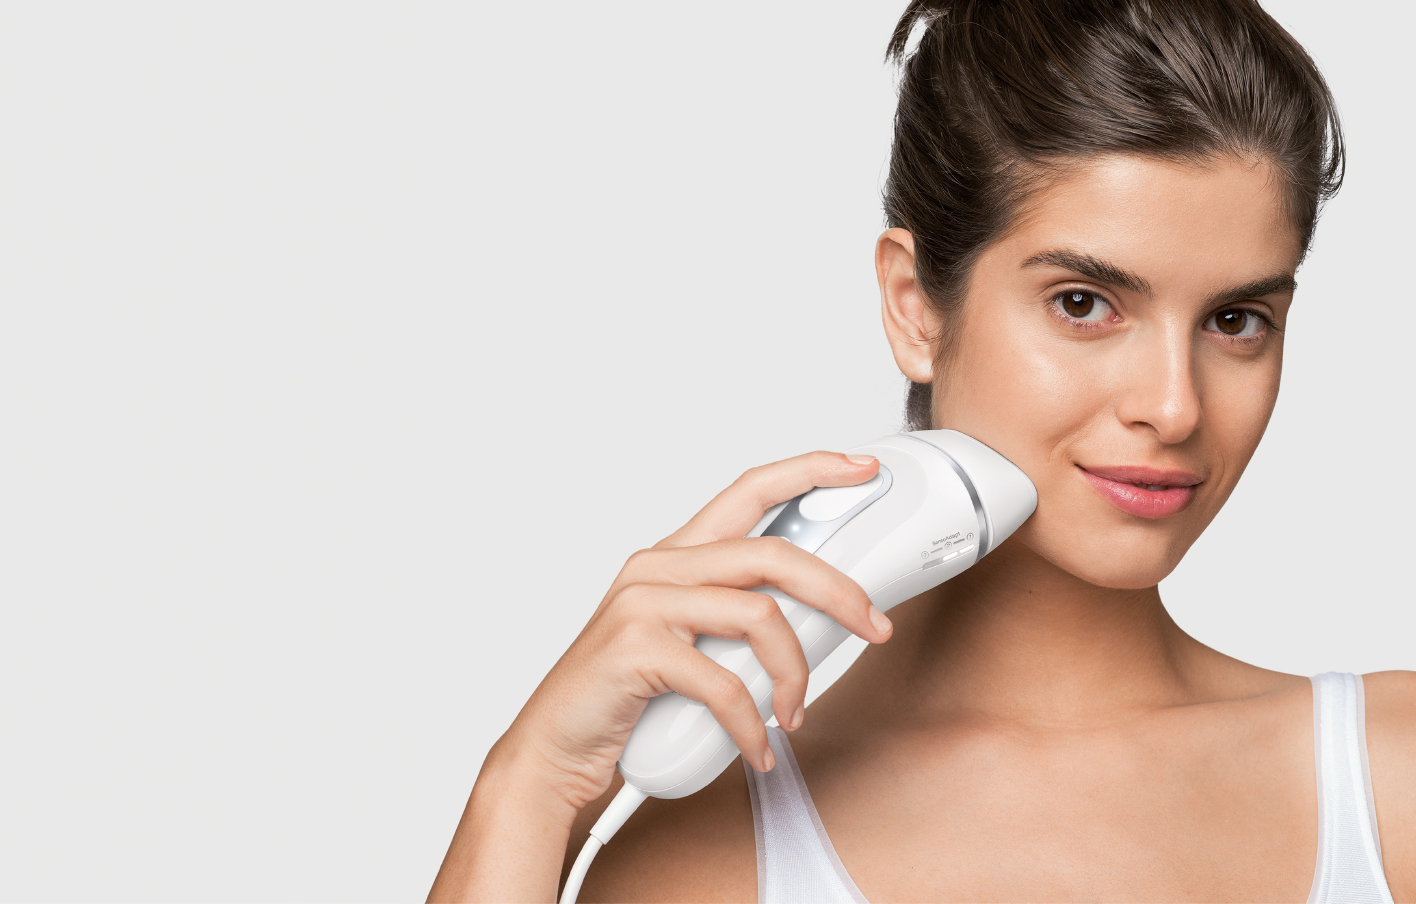 Braun Dispositivo de depilación láser de larga duración IPL para mujeres y  hombres, Silk Expert Pro 5 PL5347, para cuerpo y cara, alternativa segura y